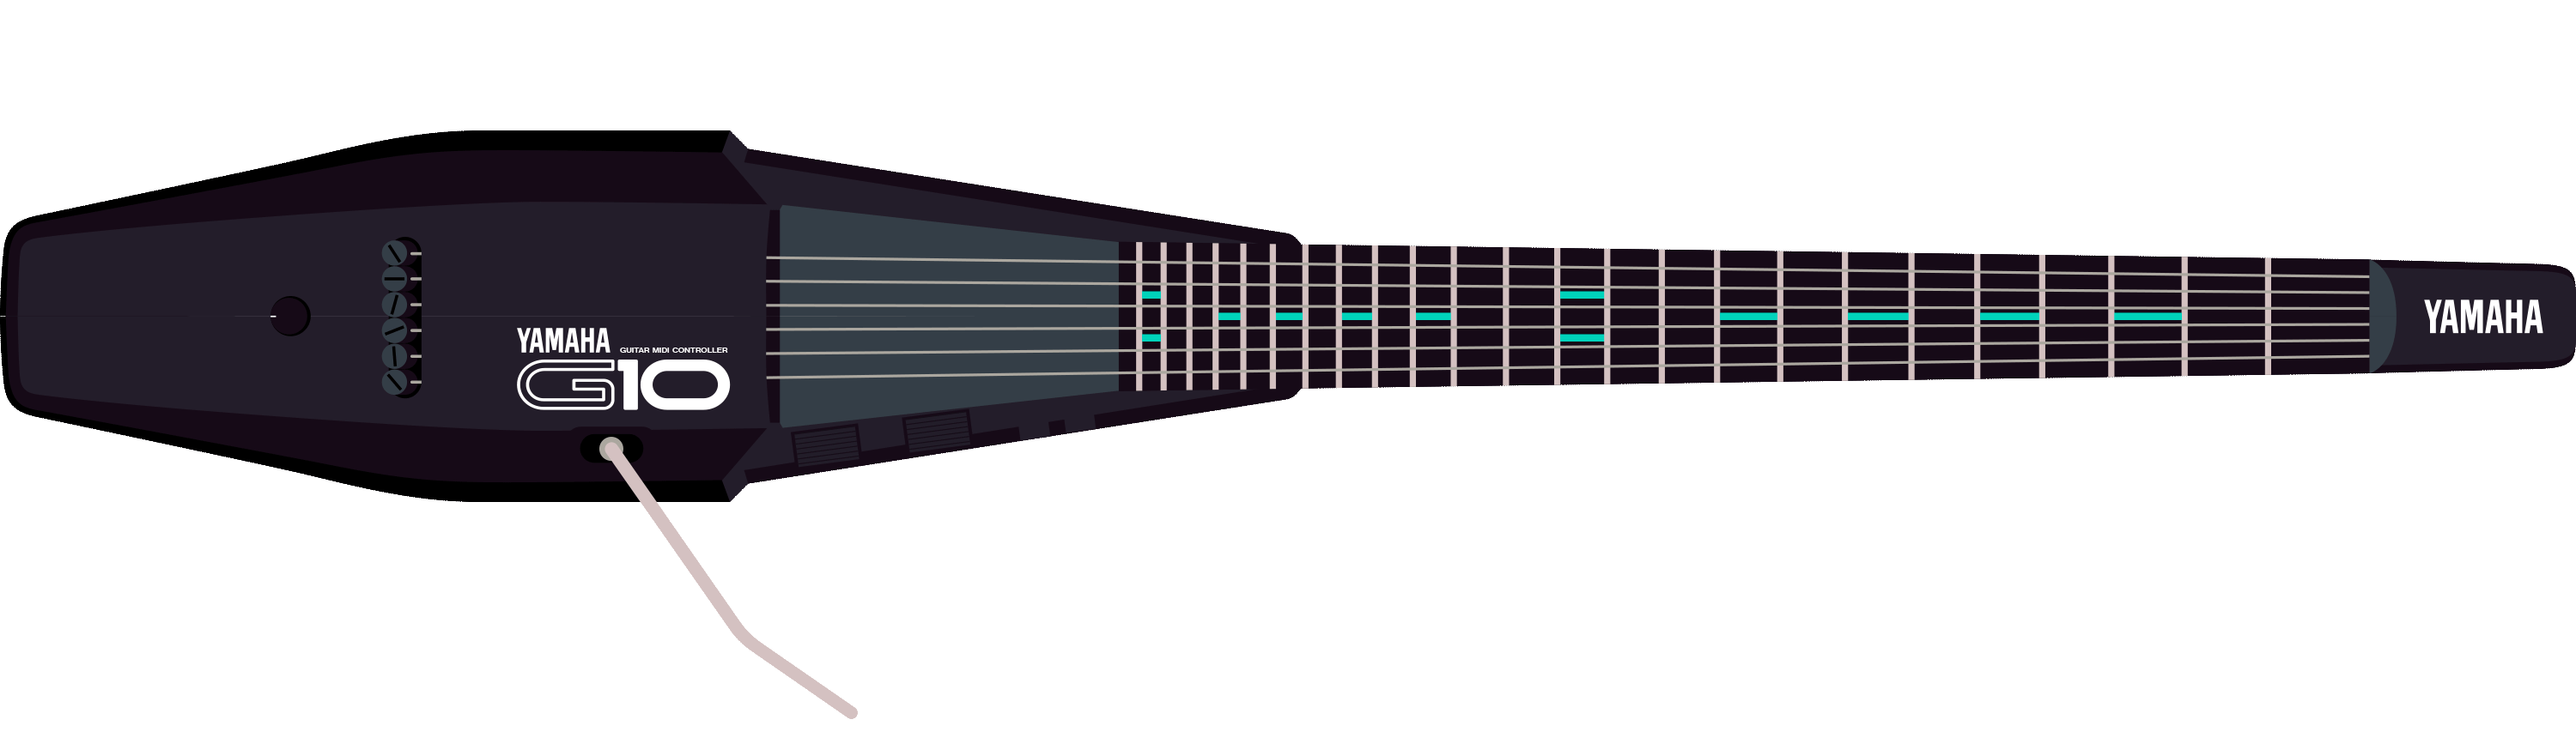 Yamaha G10 MIDI guitar controller